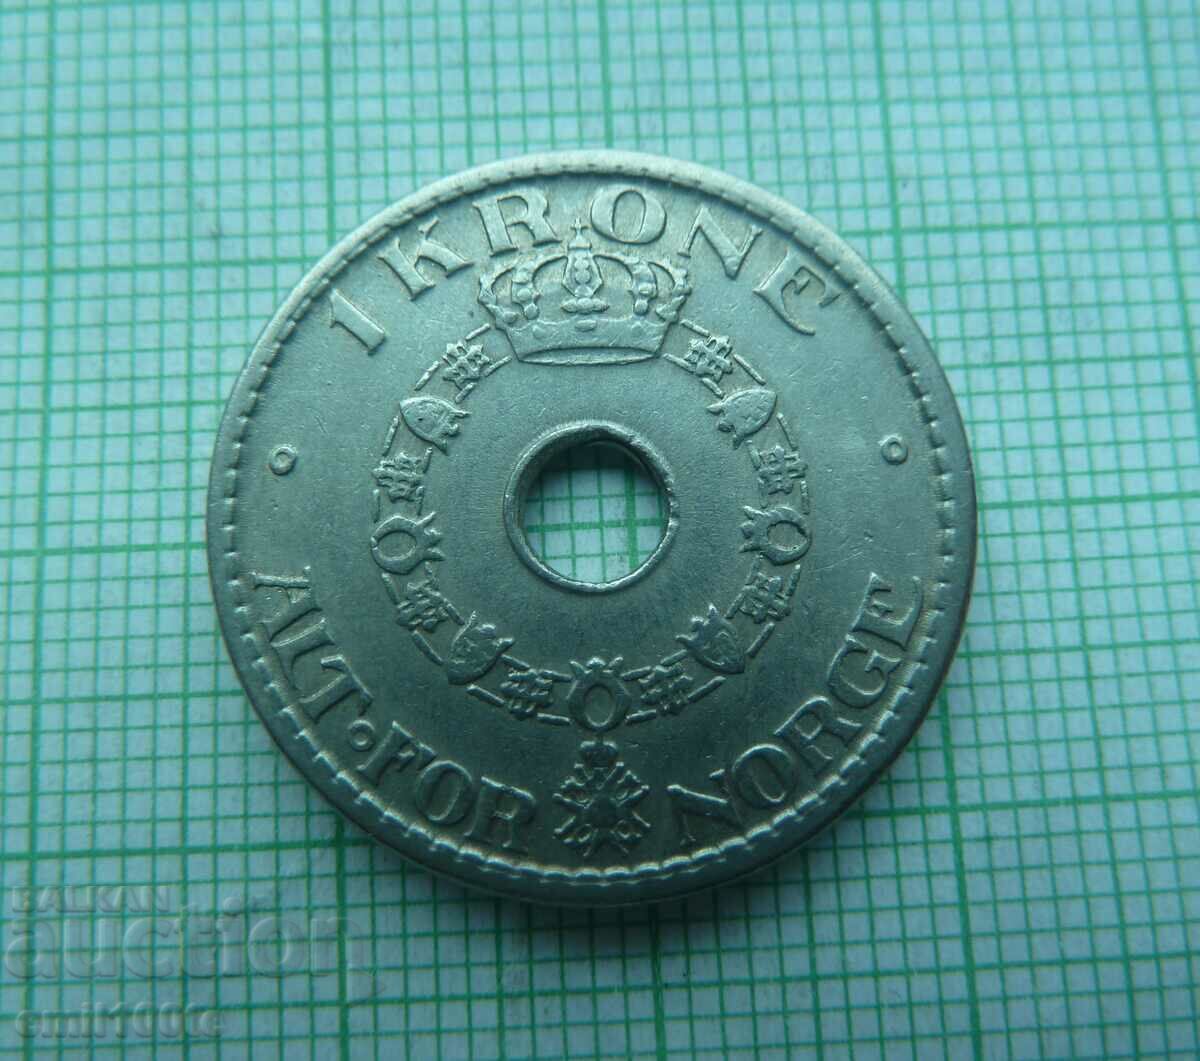 1 krone 1947 Norway